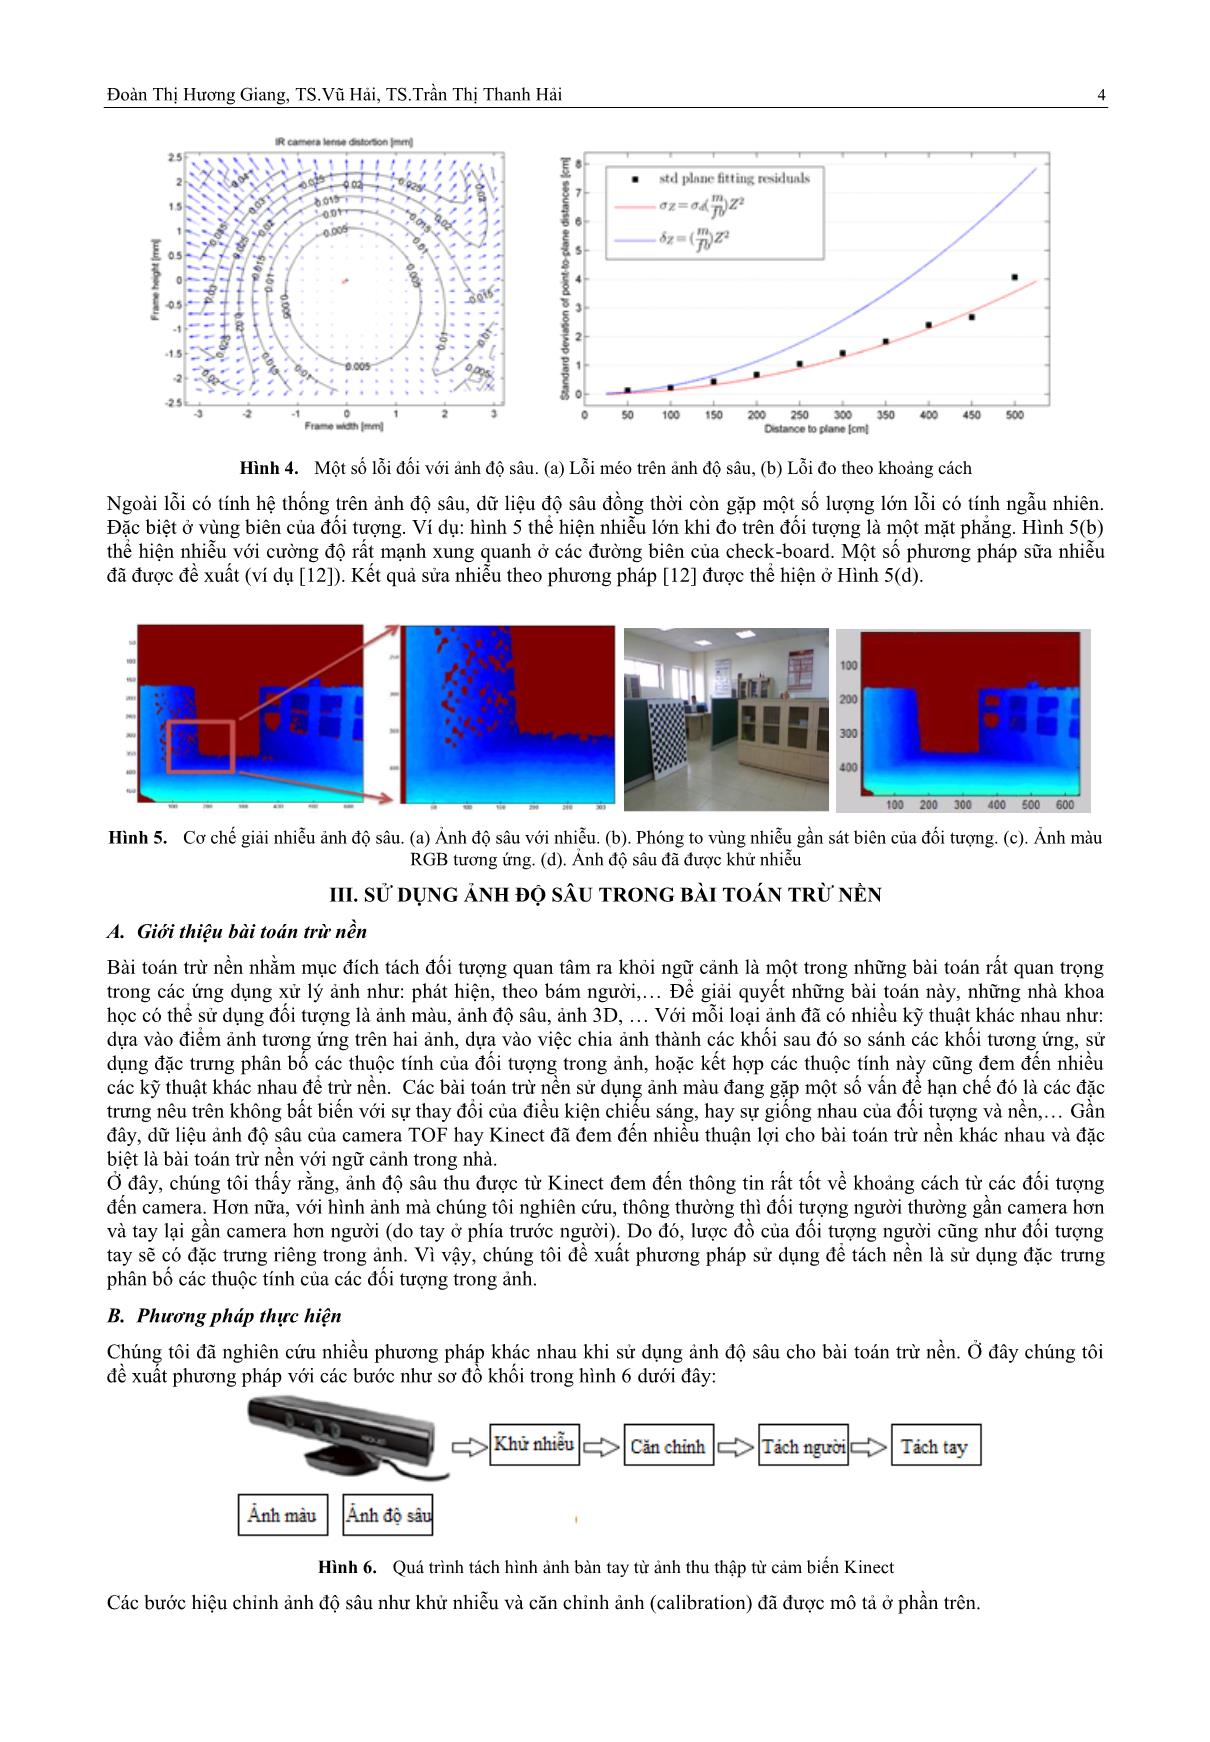 Khai thác dữ liệu ảnh độ sâu từ cảm biến Kinect: Sửa lỗi và ứng dụng trang 4